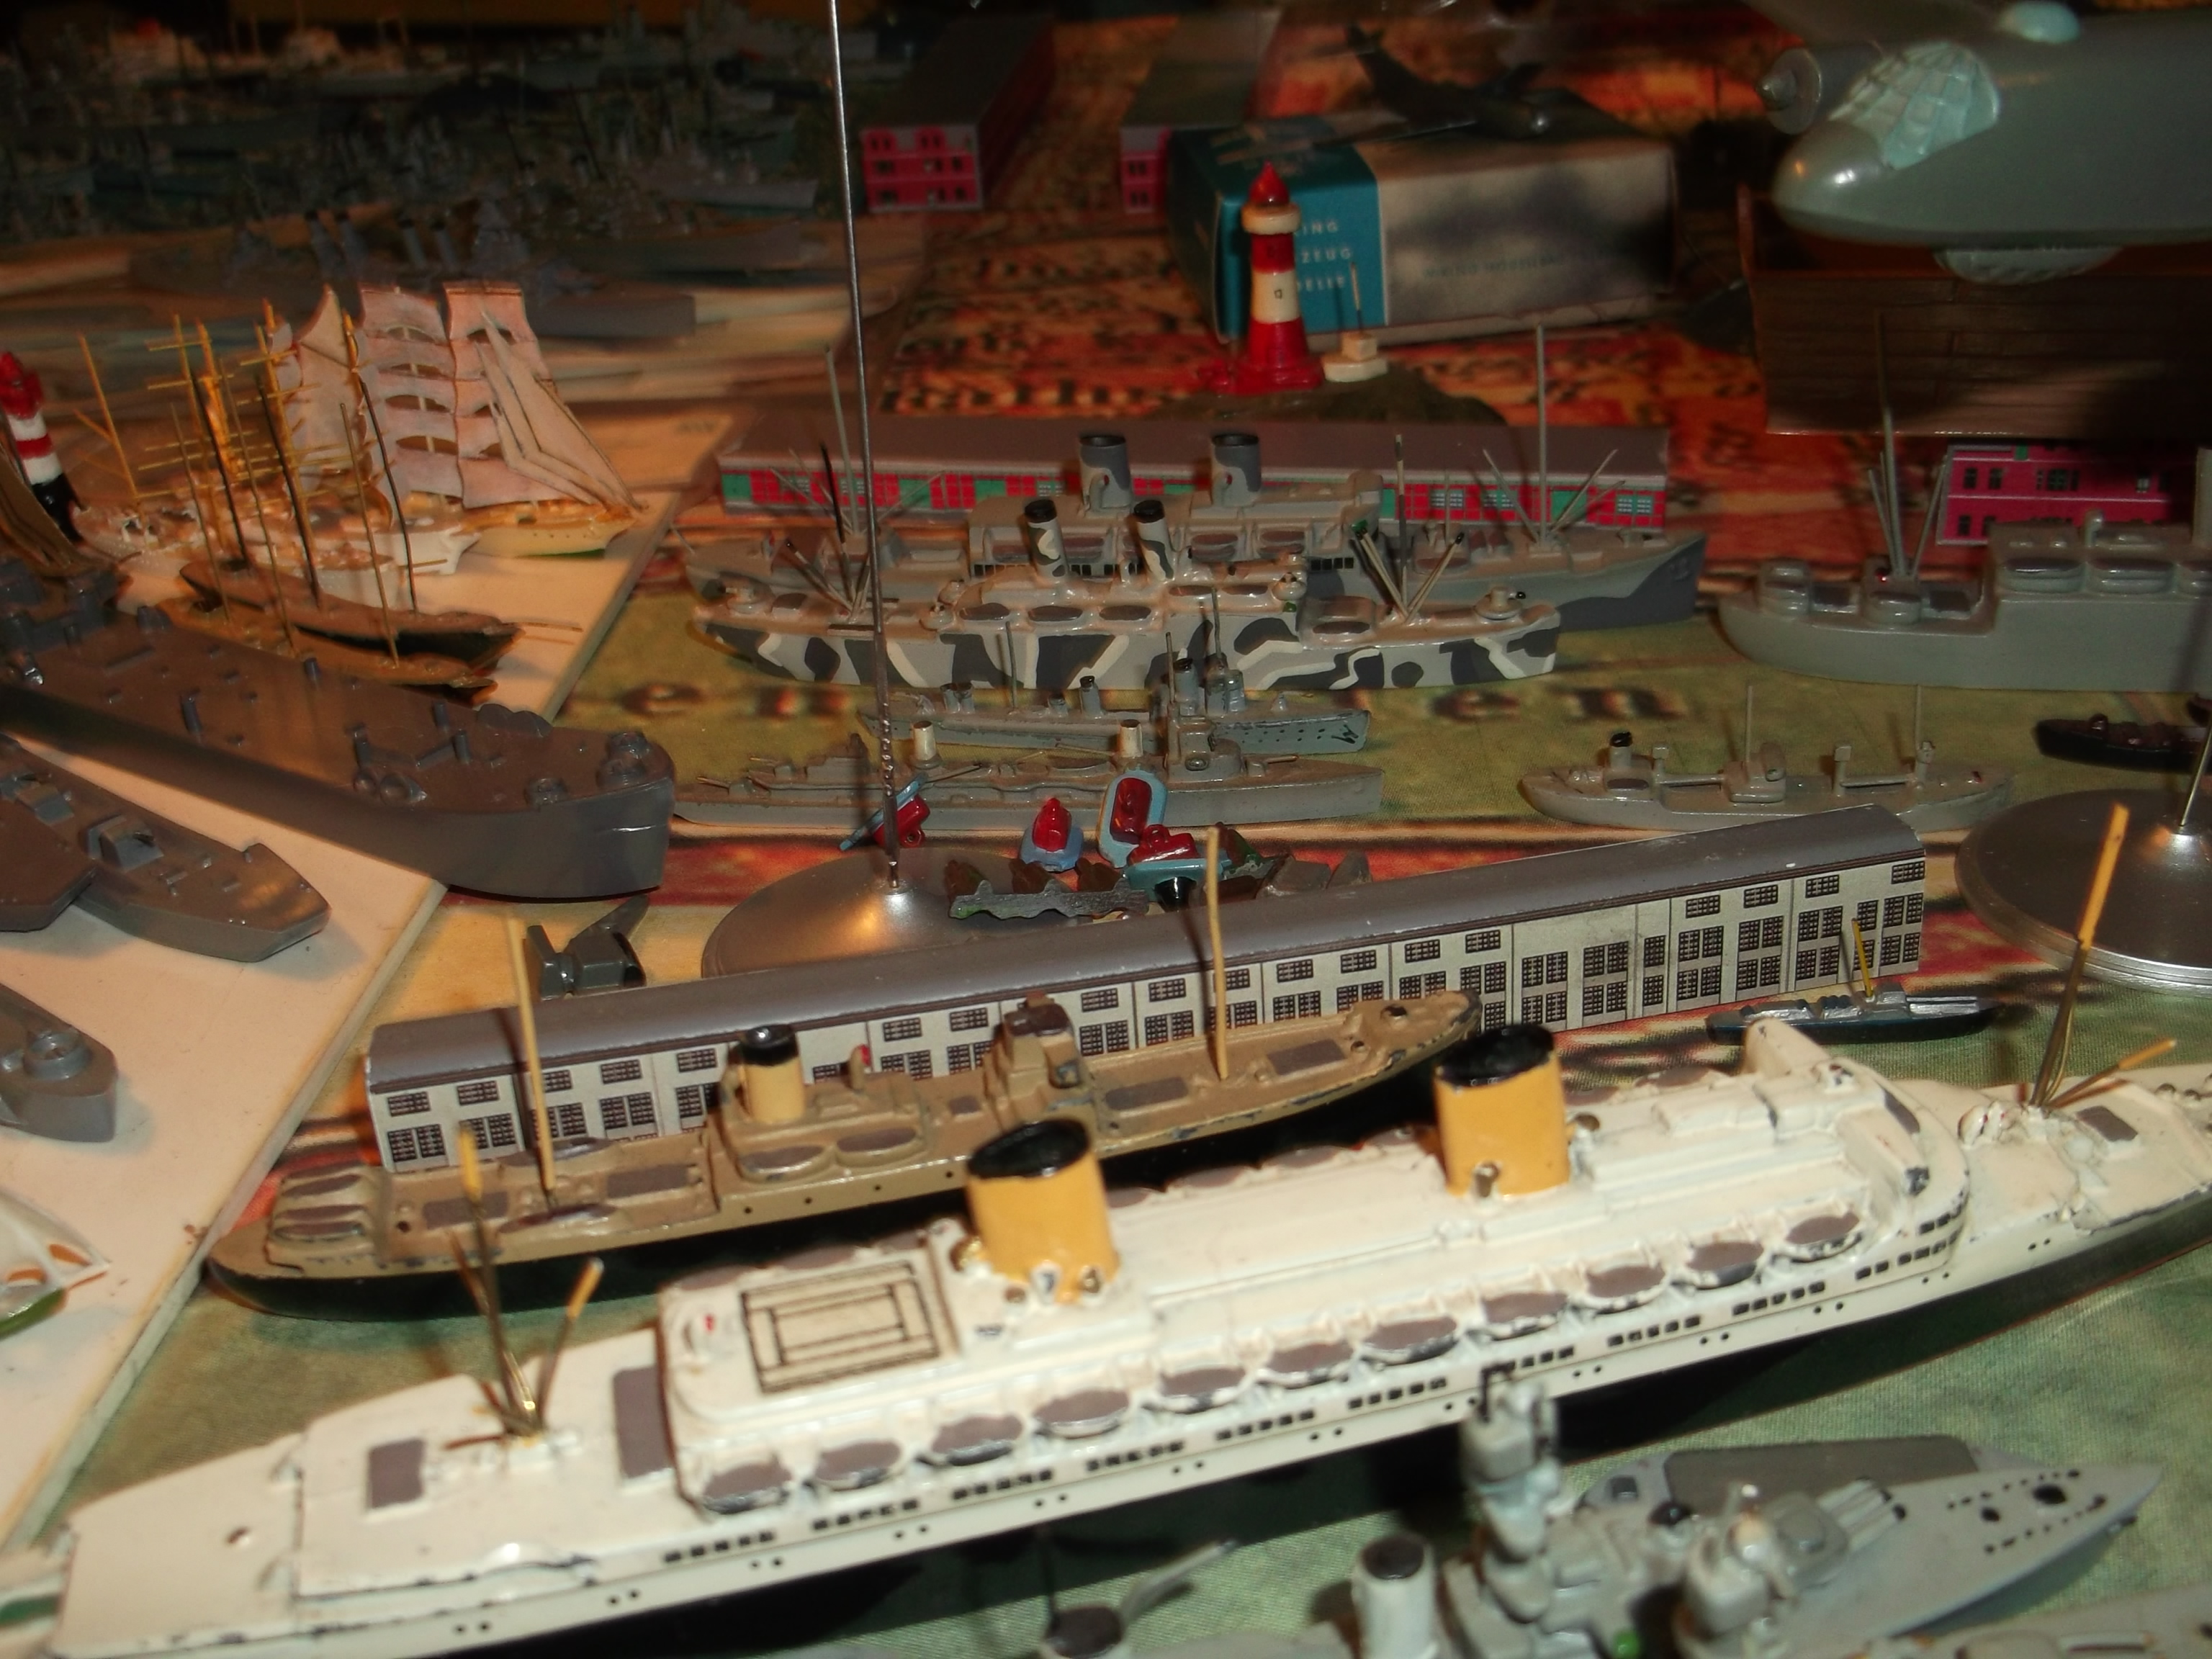 Passagierschiff "New Amsterdam" in meinem Modell-Hafen